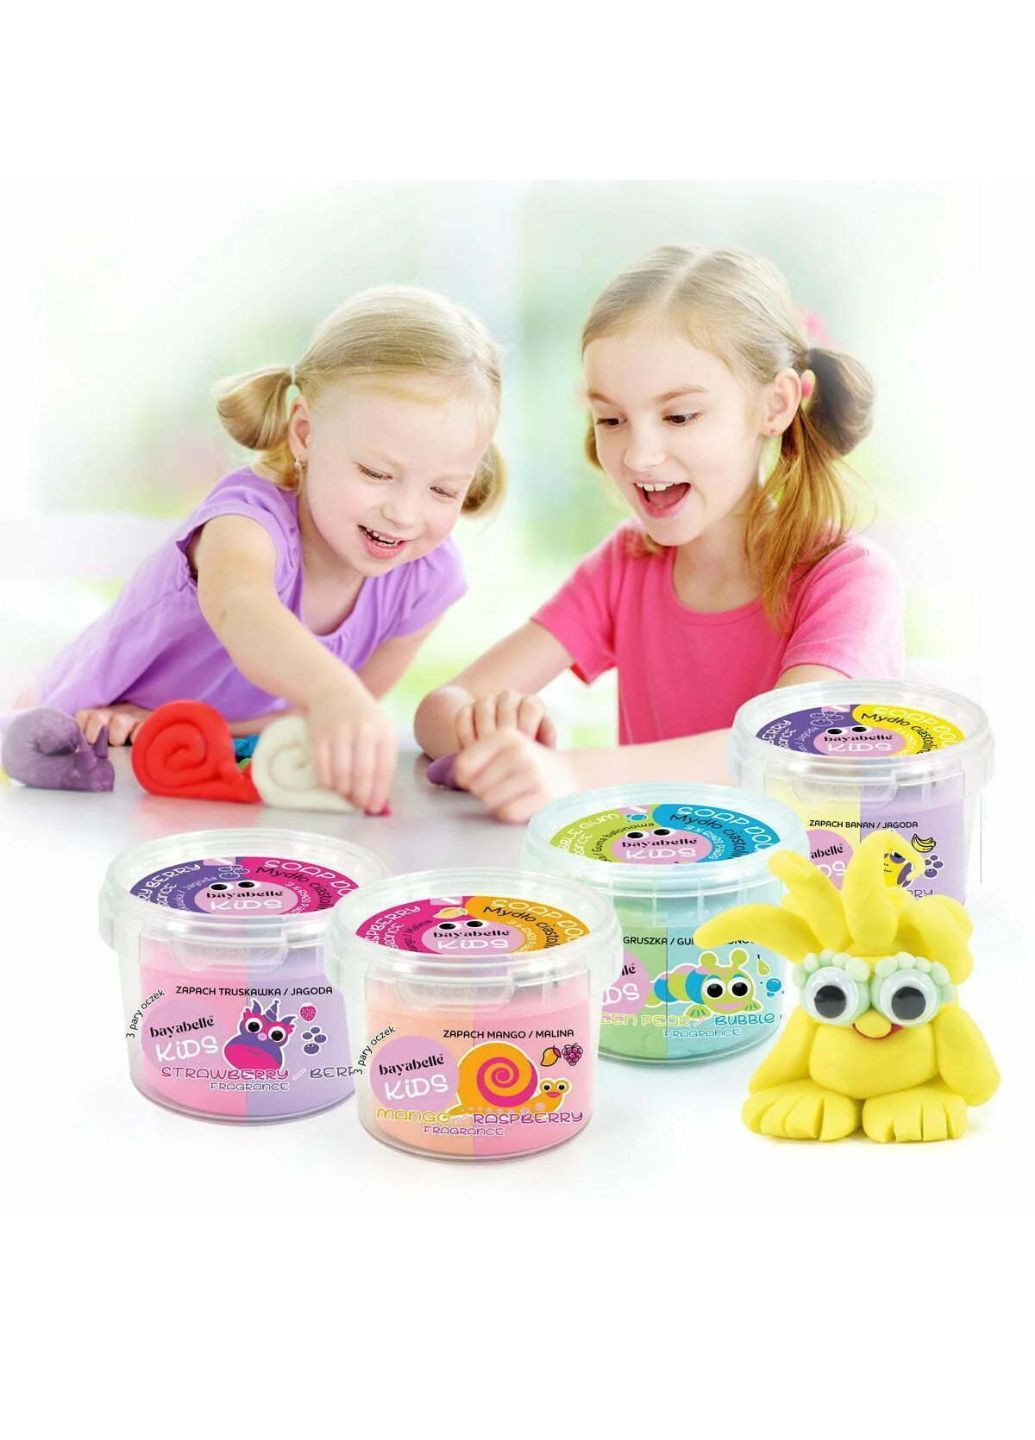 Двухцветное игровое мыло-тесто для ванны Груша/Жевательная резинка (с игрушечными глазами) 100 г Bayabelle Kids (294320566)